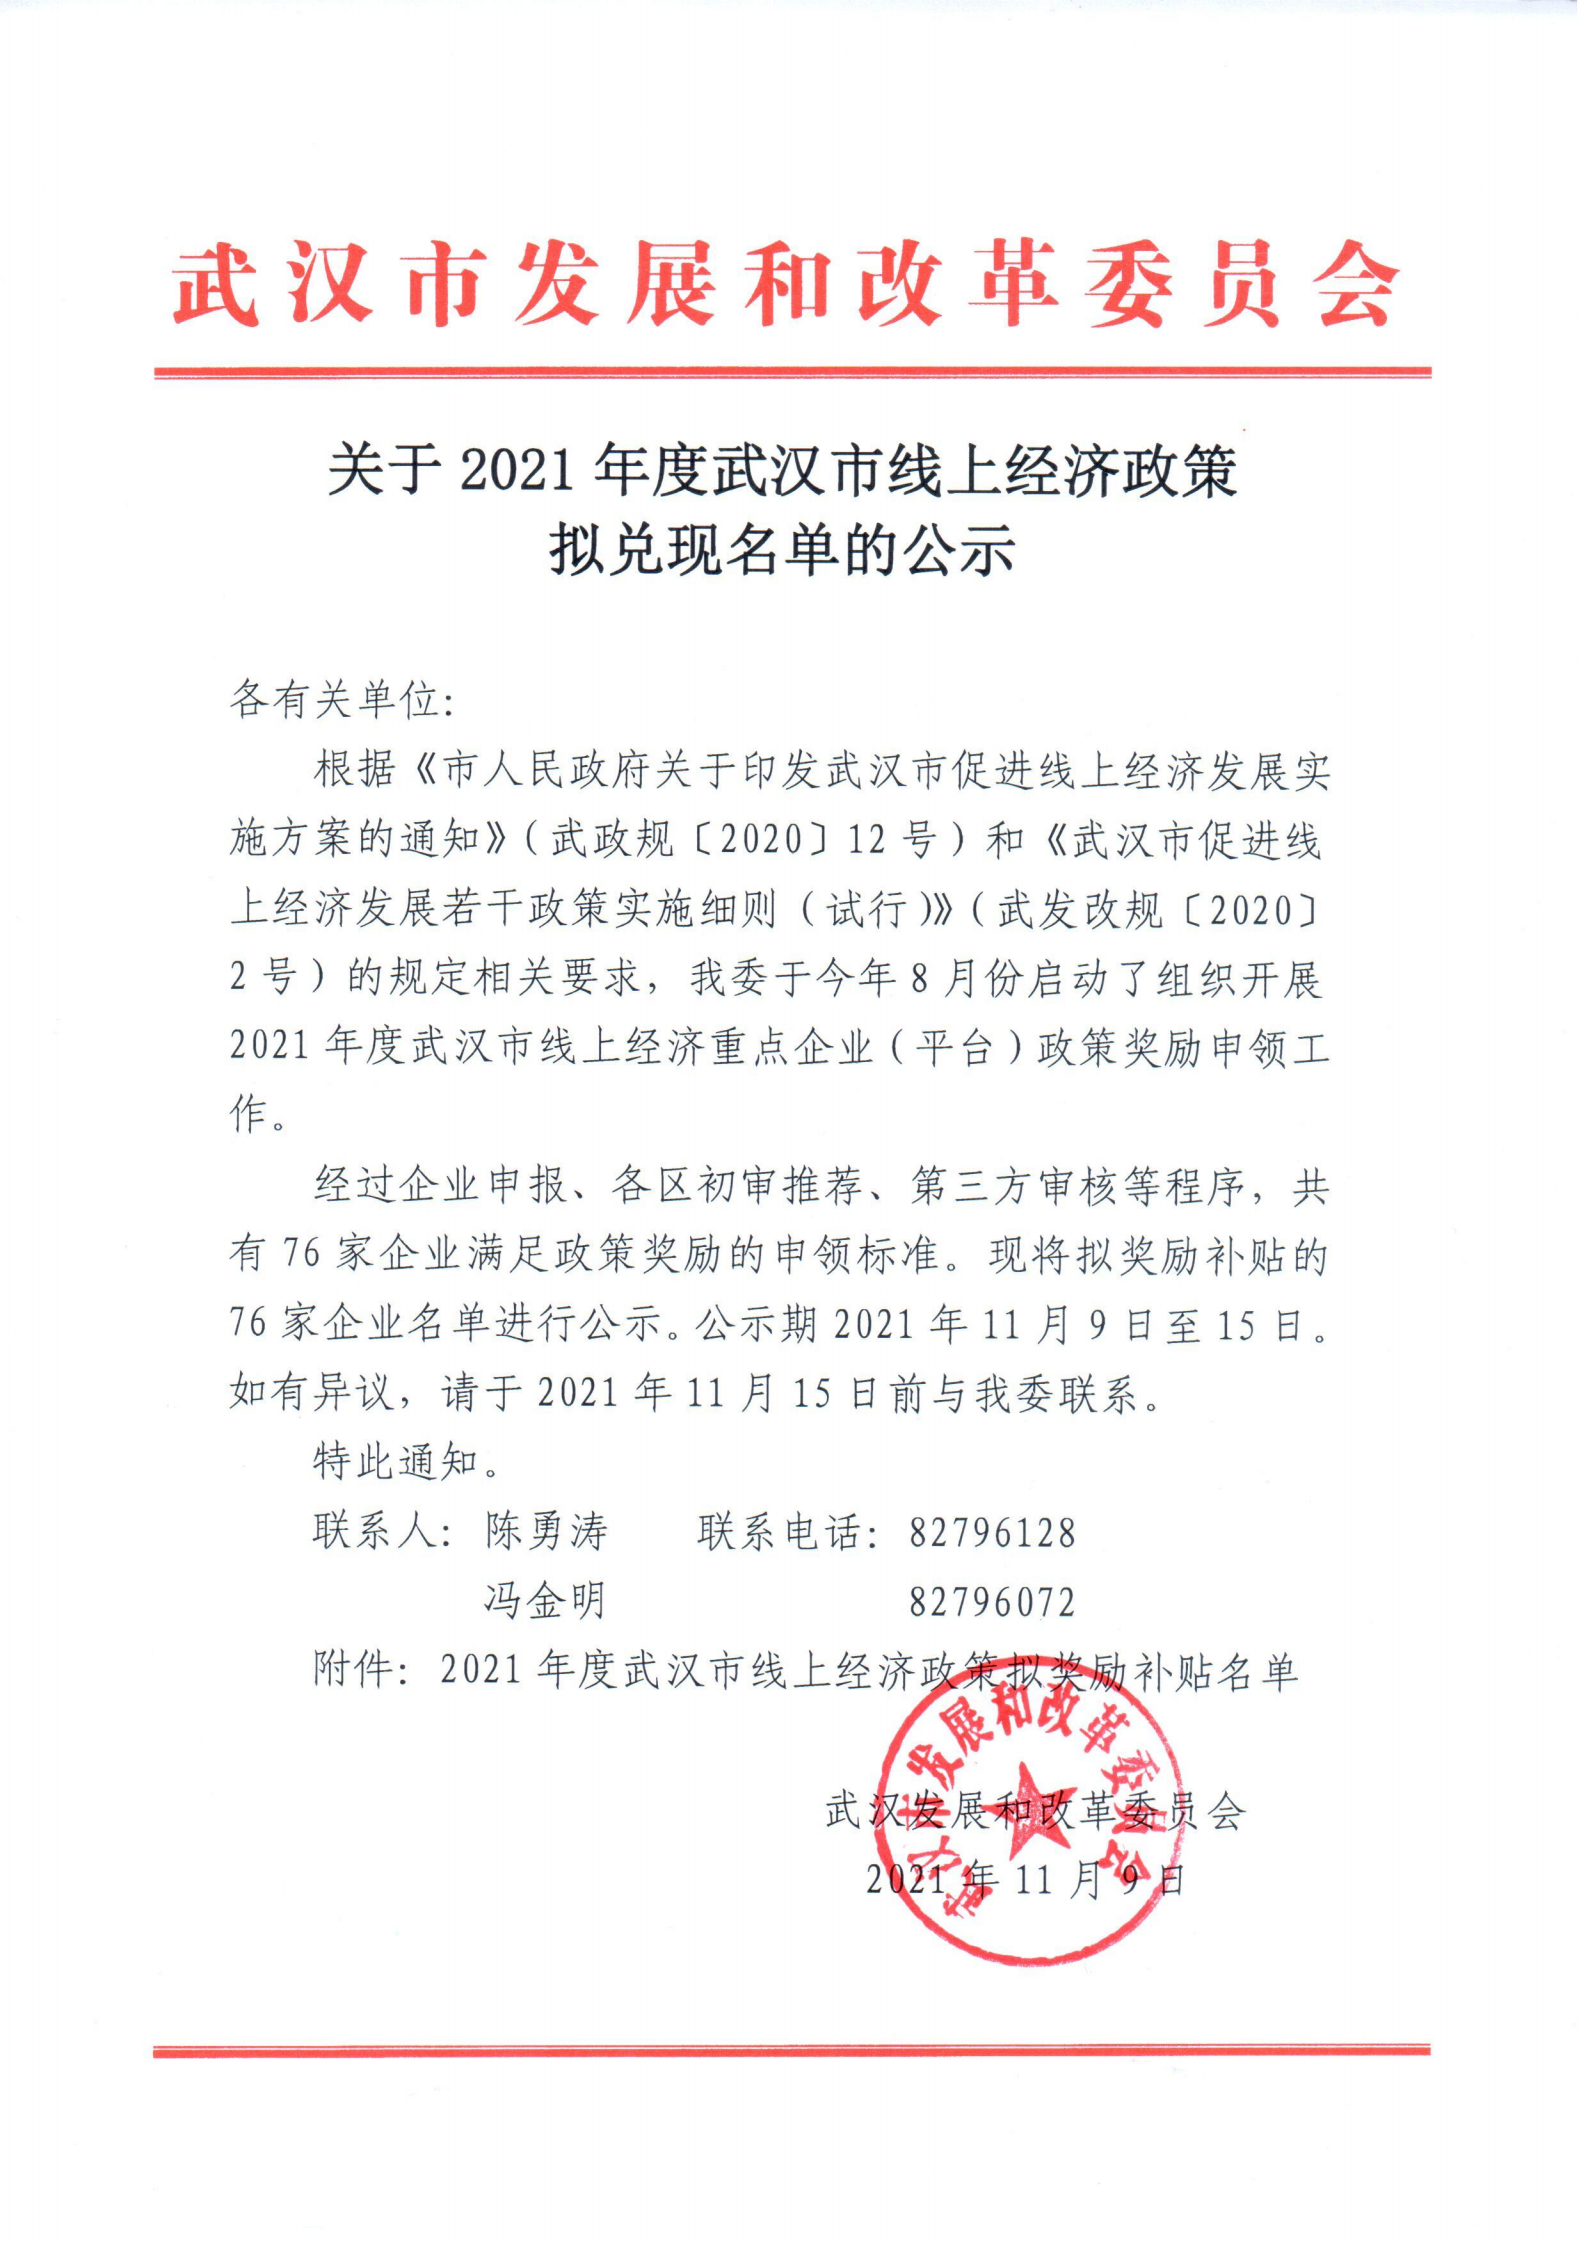 关于2021年度武汉市线上经济政策拟兑现名单的公示_00.png